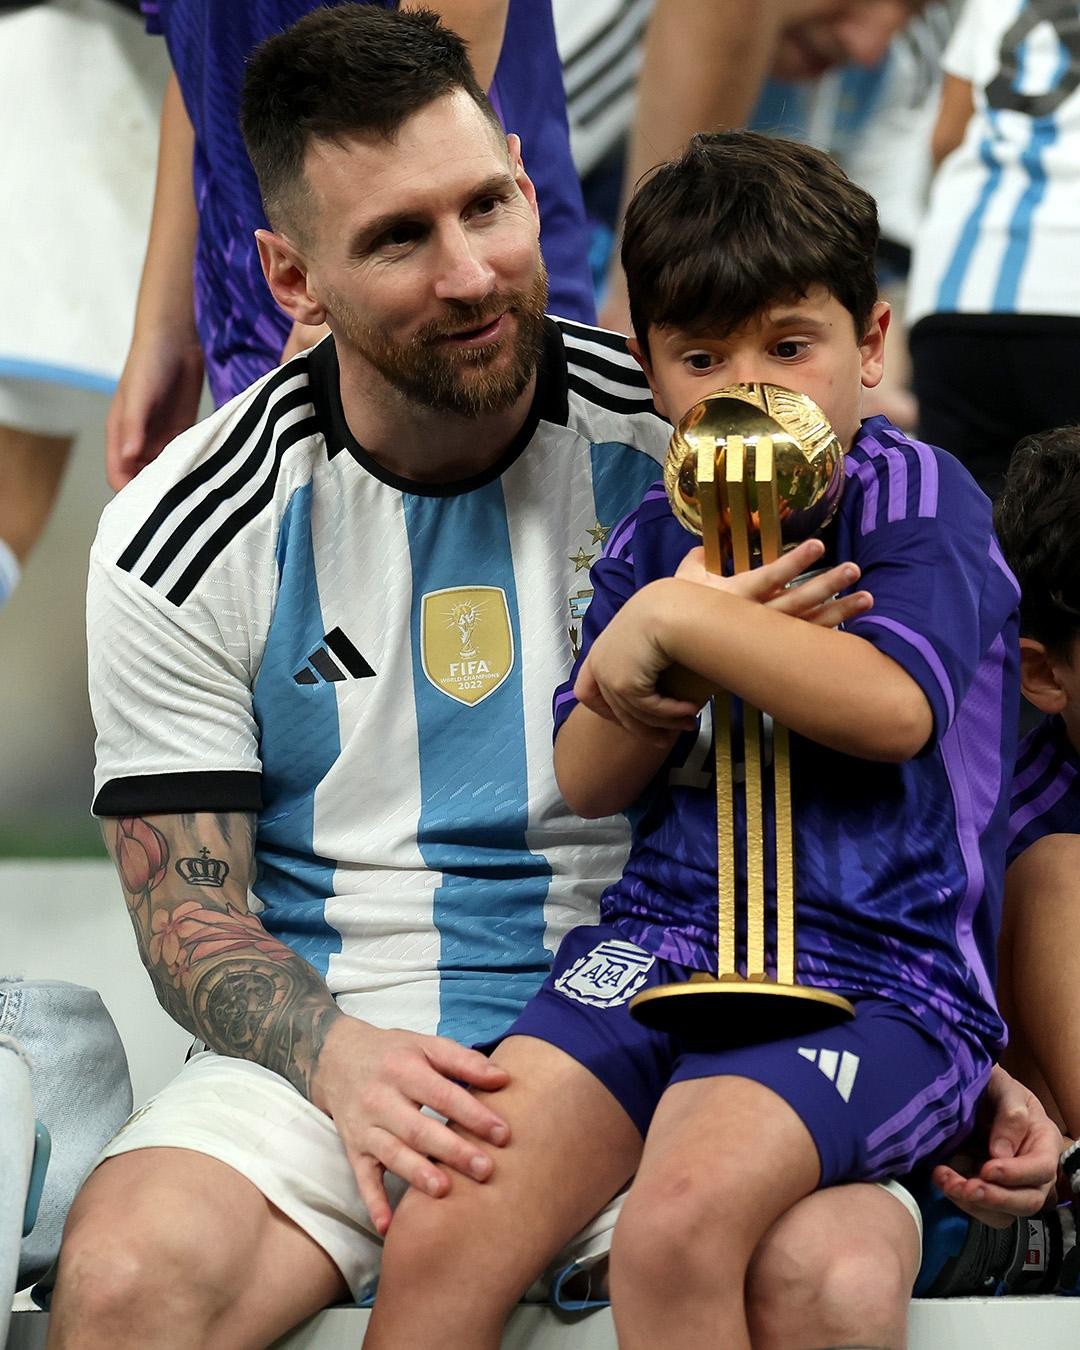 Đừng bỏ lỡ bức ảnh vui nhộn của Messi lúc còn bé, khi anh chỉ là một cậu bé đáng yêu ít ai ngờ được là sẽ trở thành một trong những cầu thủ vĩ đại nhất thế giới.